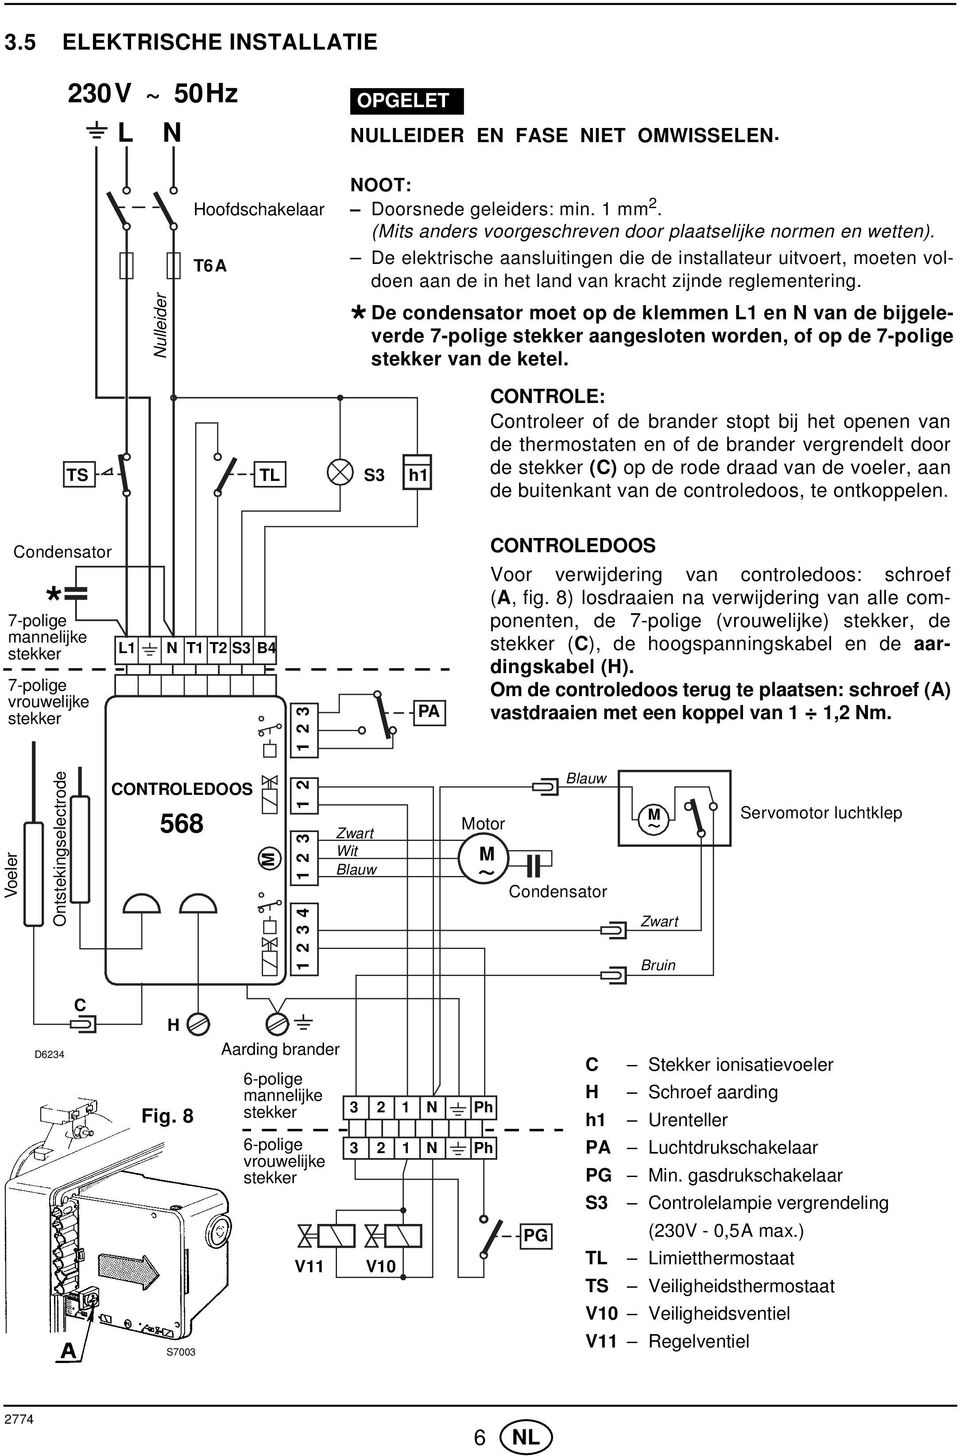 De condensator moet op de klemmen L1 en N van de bijgeleverde 7-polige stekker aangesloten worden, of op de 7-polige * stekker van de ketel.